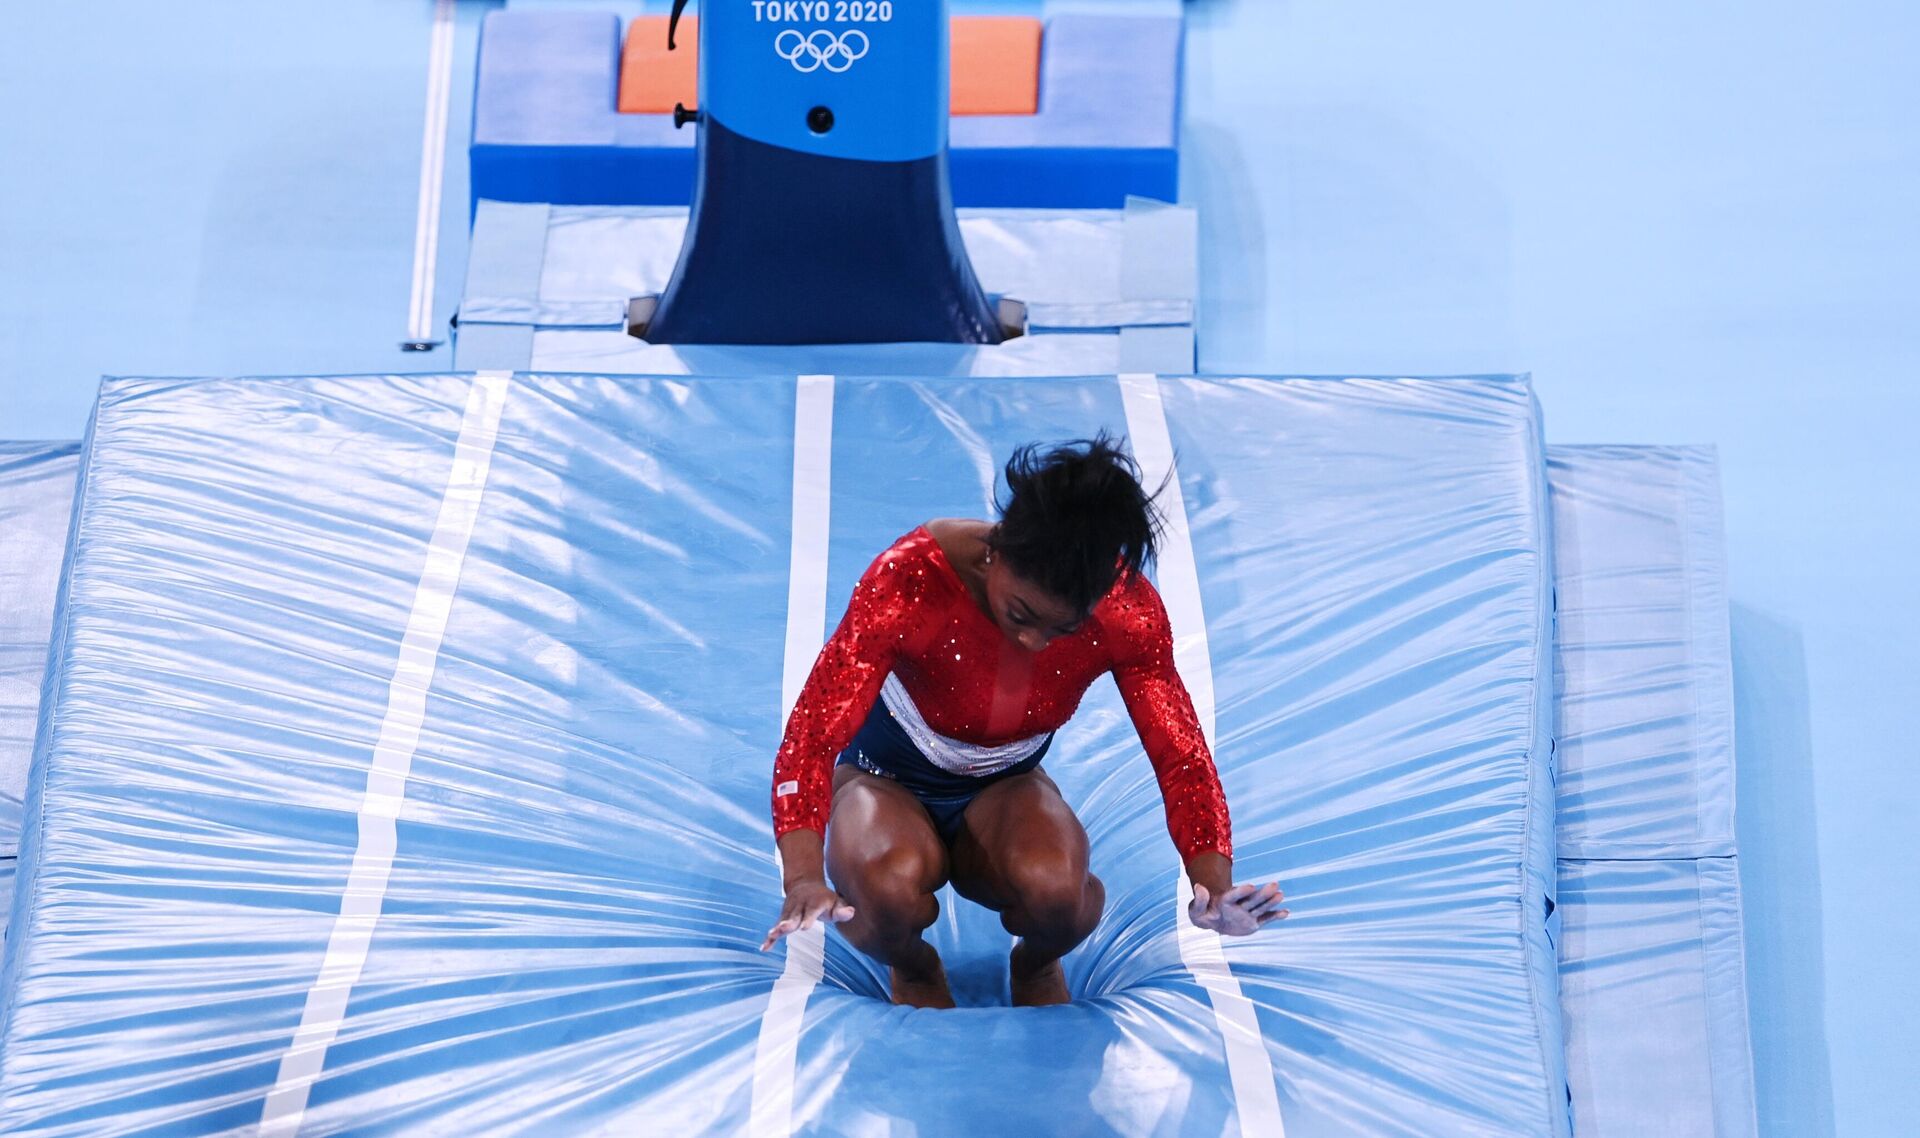 Симона Байлз (США) выполняет опорный прыжок в командном многоборье среди женщин на соревнованиях по спортивной гимнастике на XXXII летних Олимпийских играх в Токио. - РИА Новости, 1920, 18.10.2021